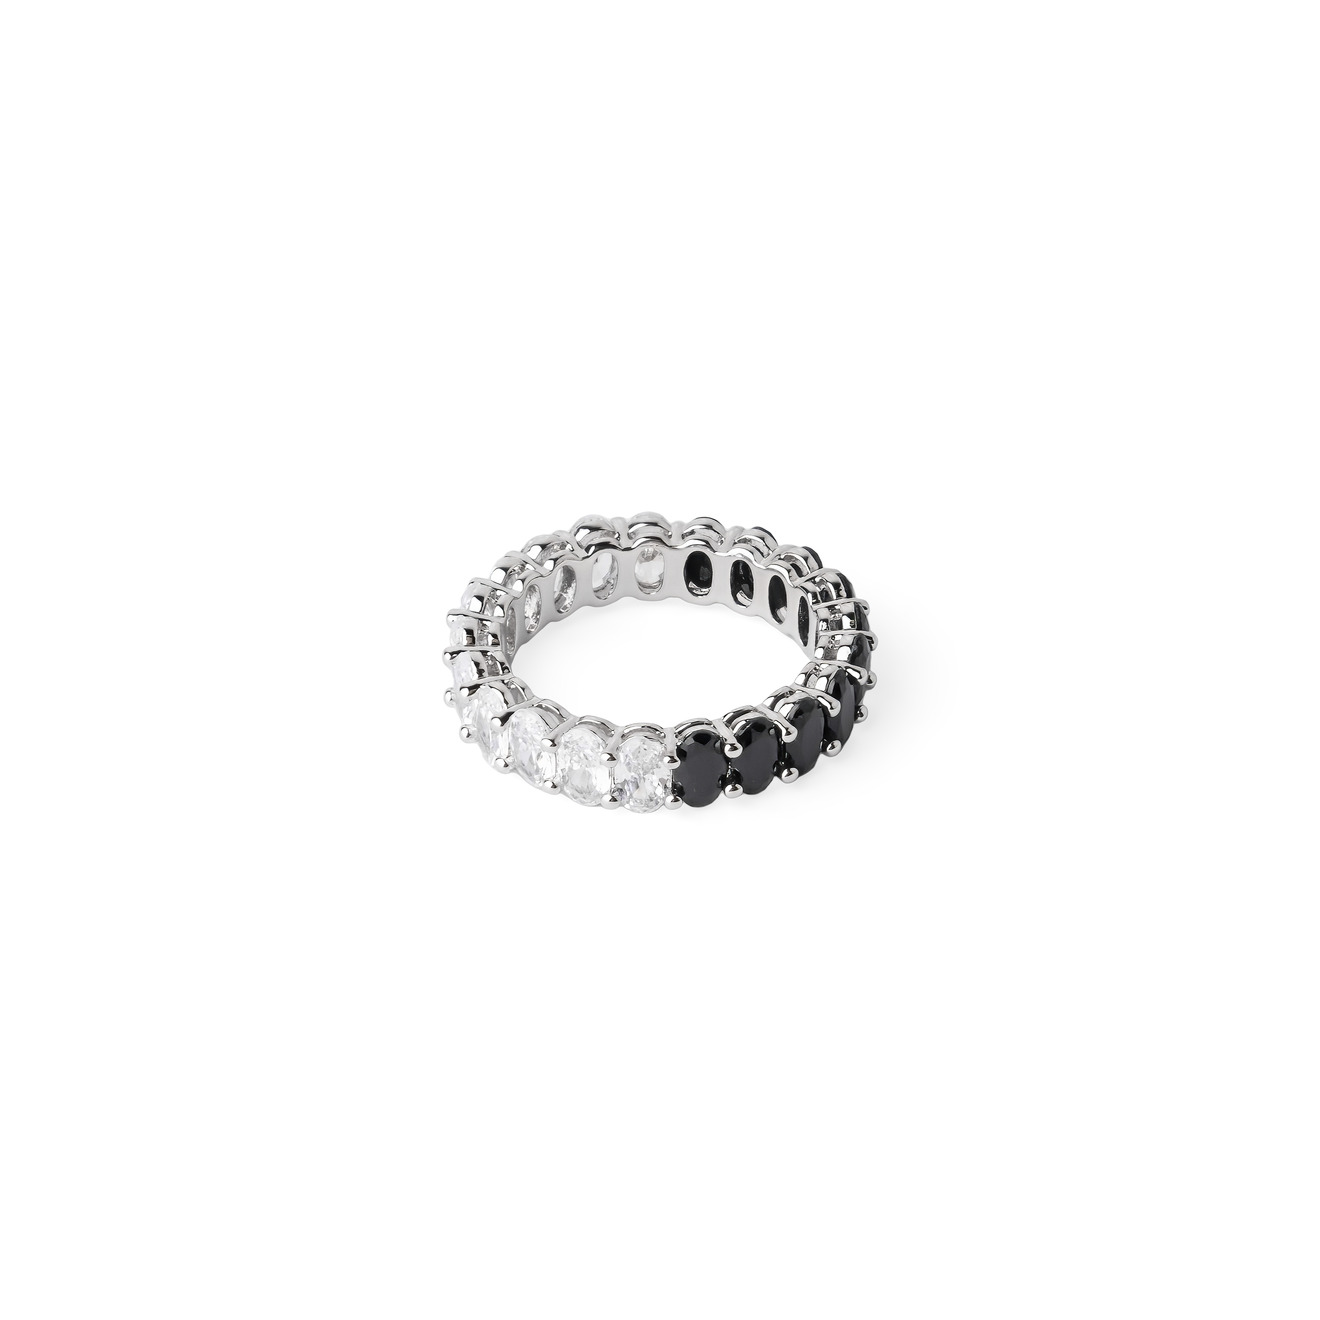 Herald Percy Серебристое кольцо с черными и белыми кристаллами herald percy серебристое кольцо с белыми и зелеными кристаллами